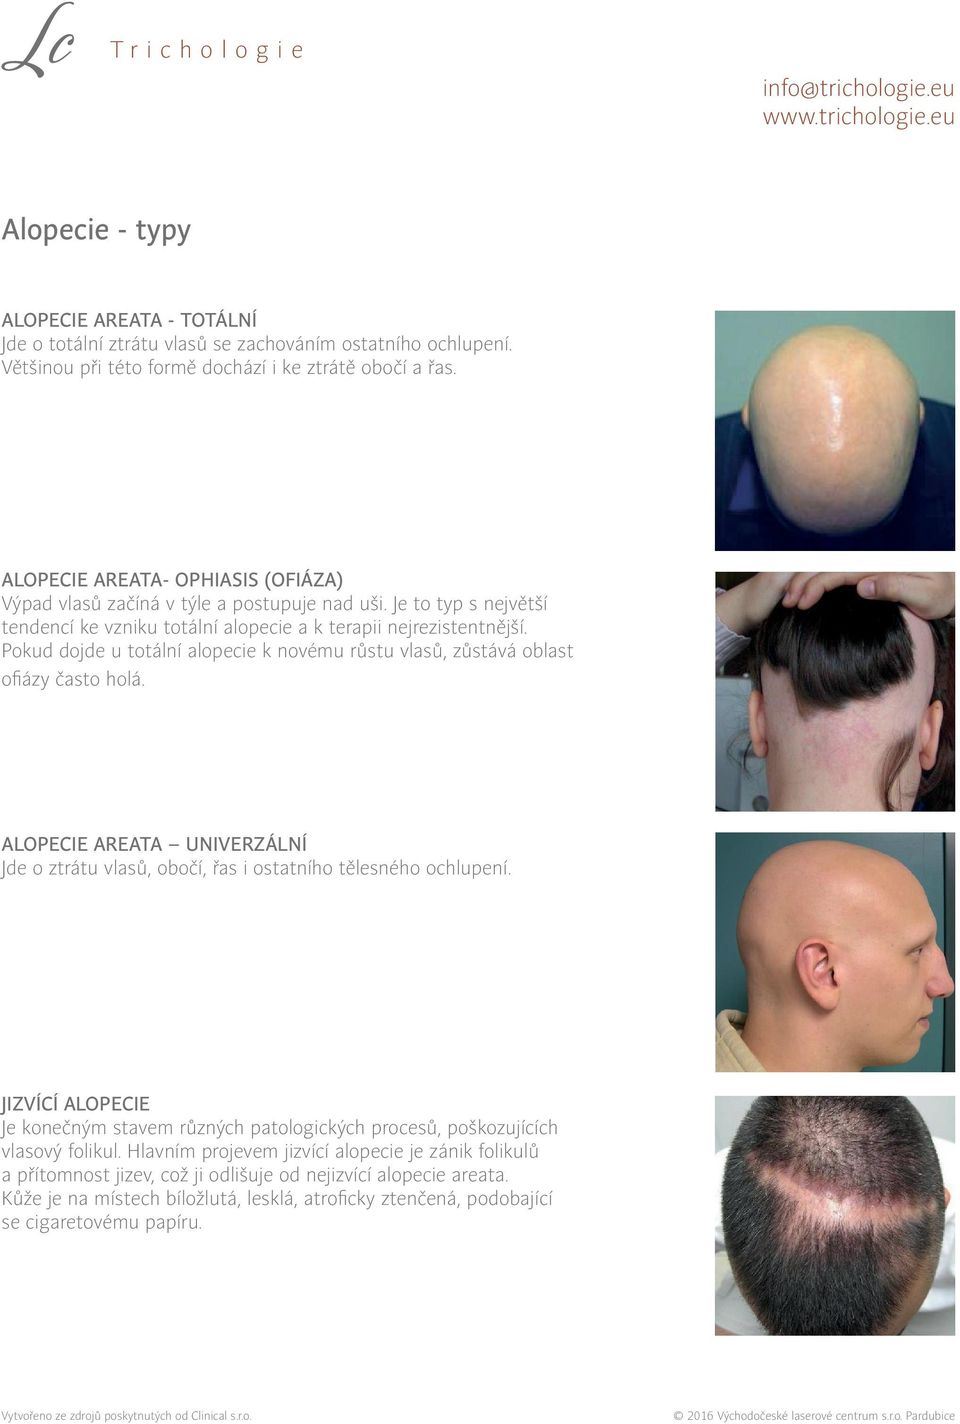 Pokud dojde u totální alopecie k novému růstu vlasů, zůstává oblast ofiázy často holá. Alopecie areata univerzální Jde o ztrátu vlasů, obočí, řas i ostatního tělesného ochlupení.